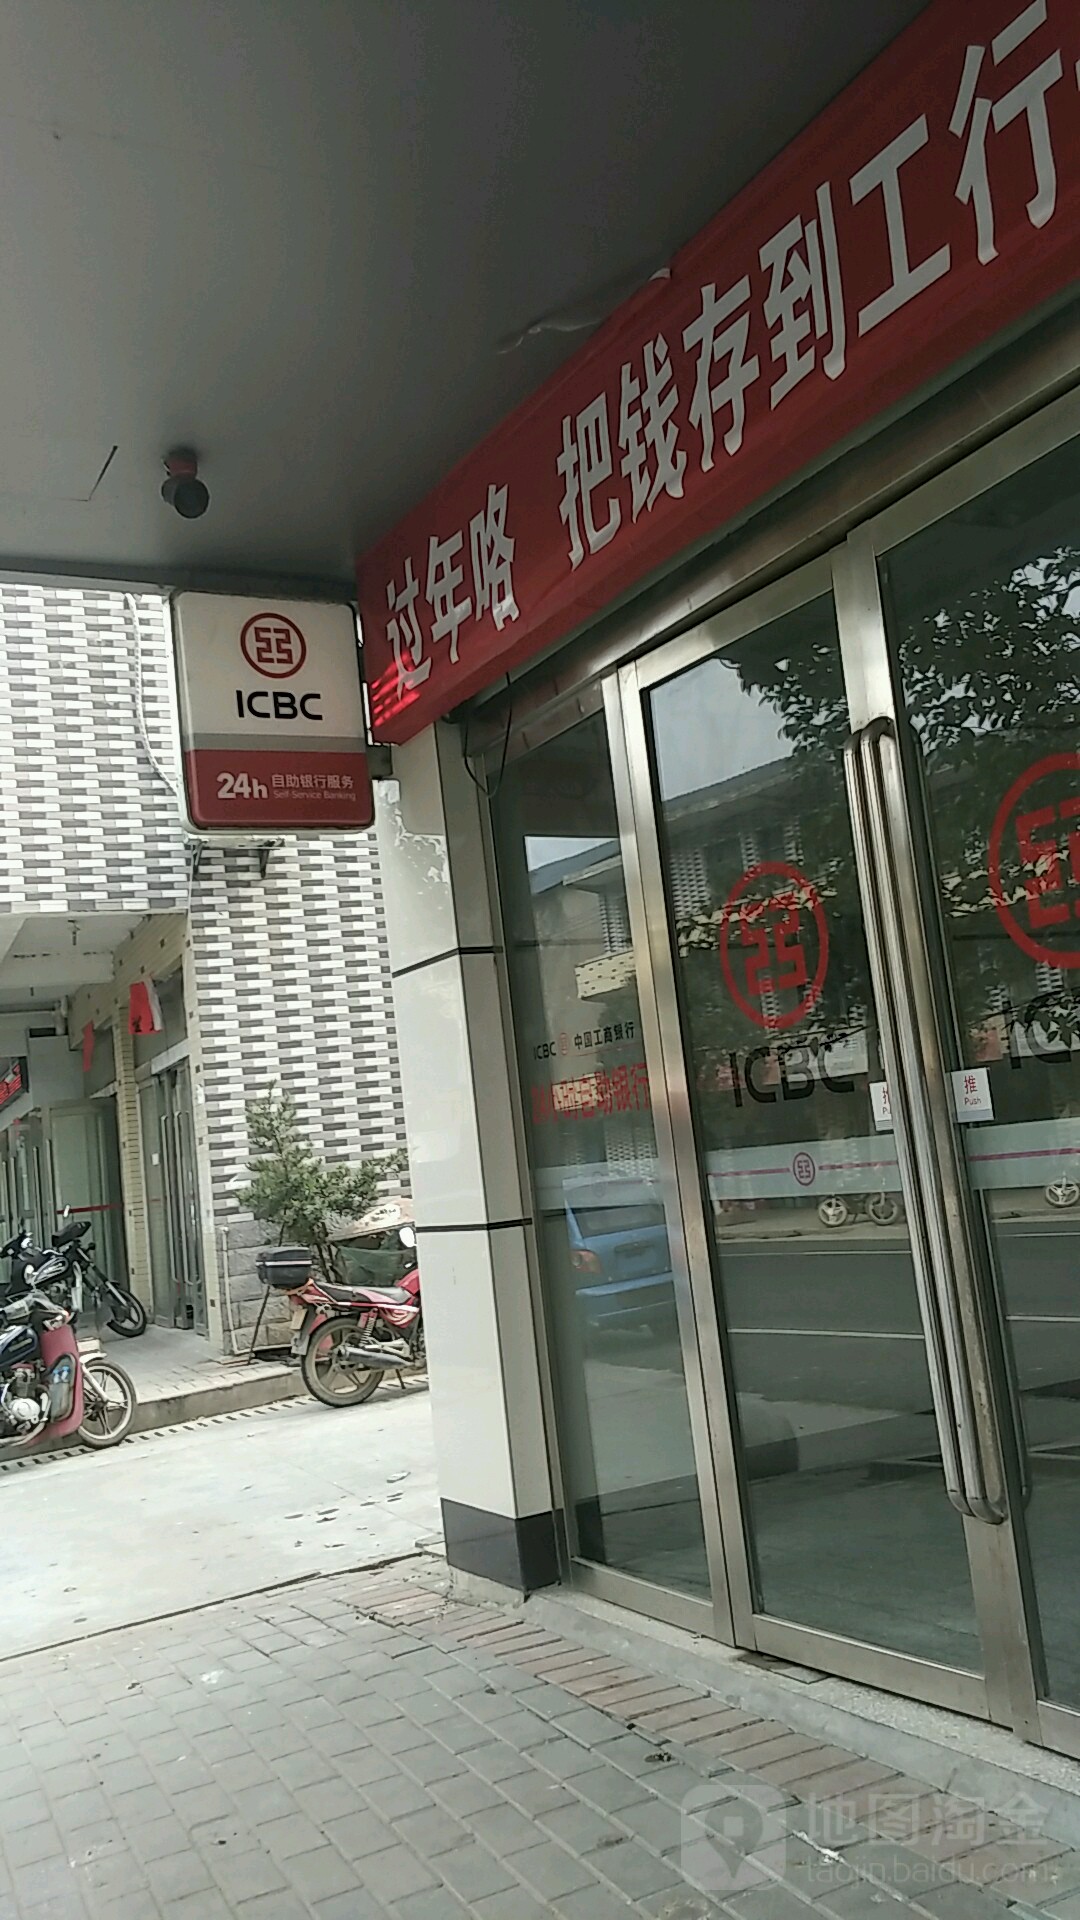 中國工商銀行24小時自助銀行服務